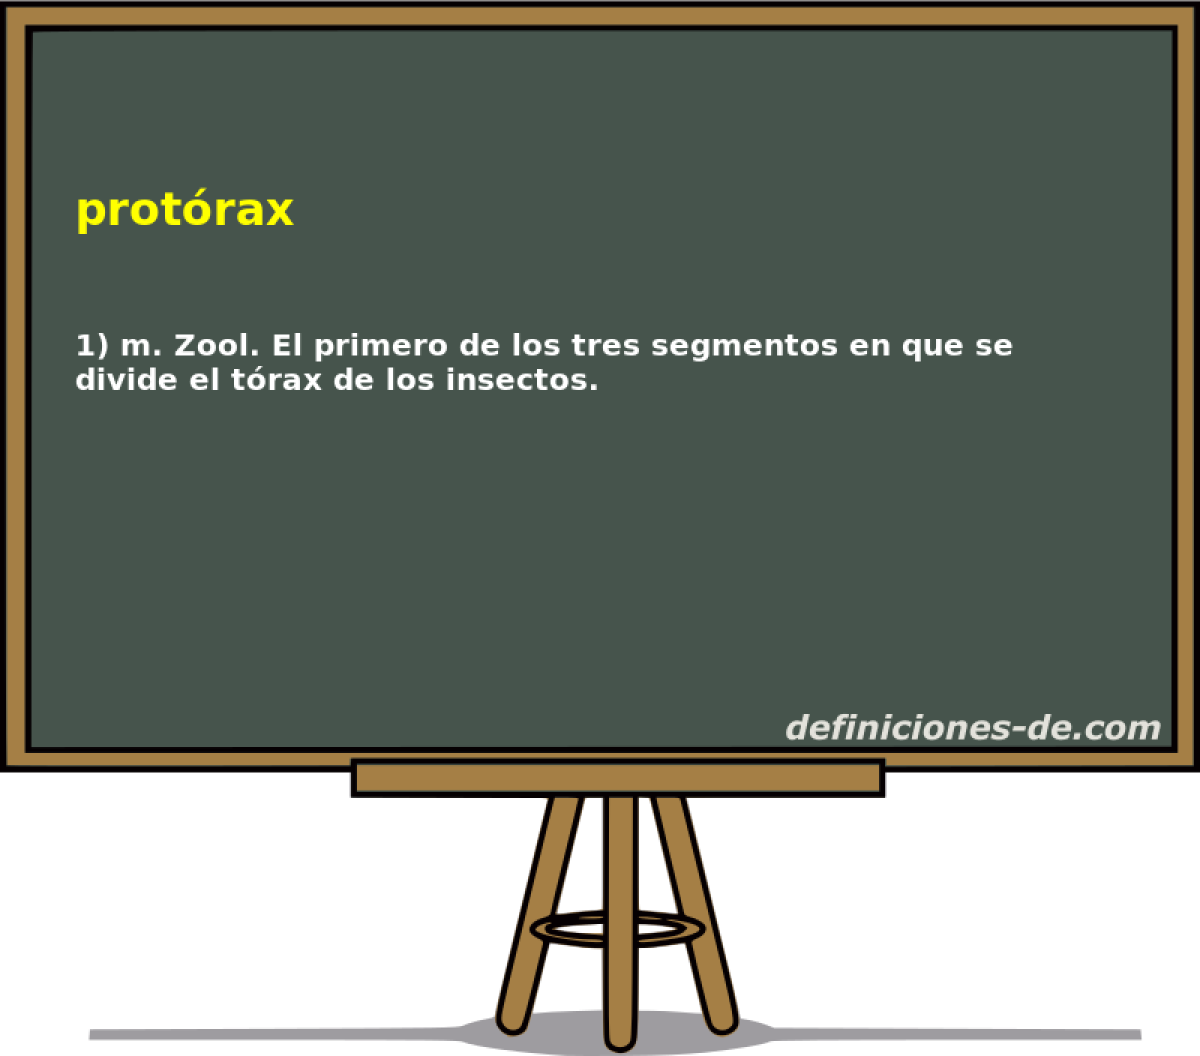 protrax 